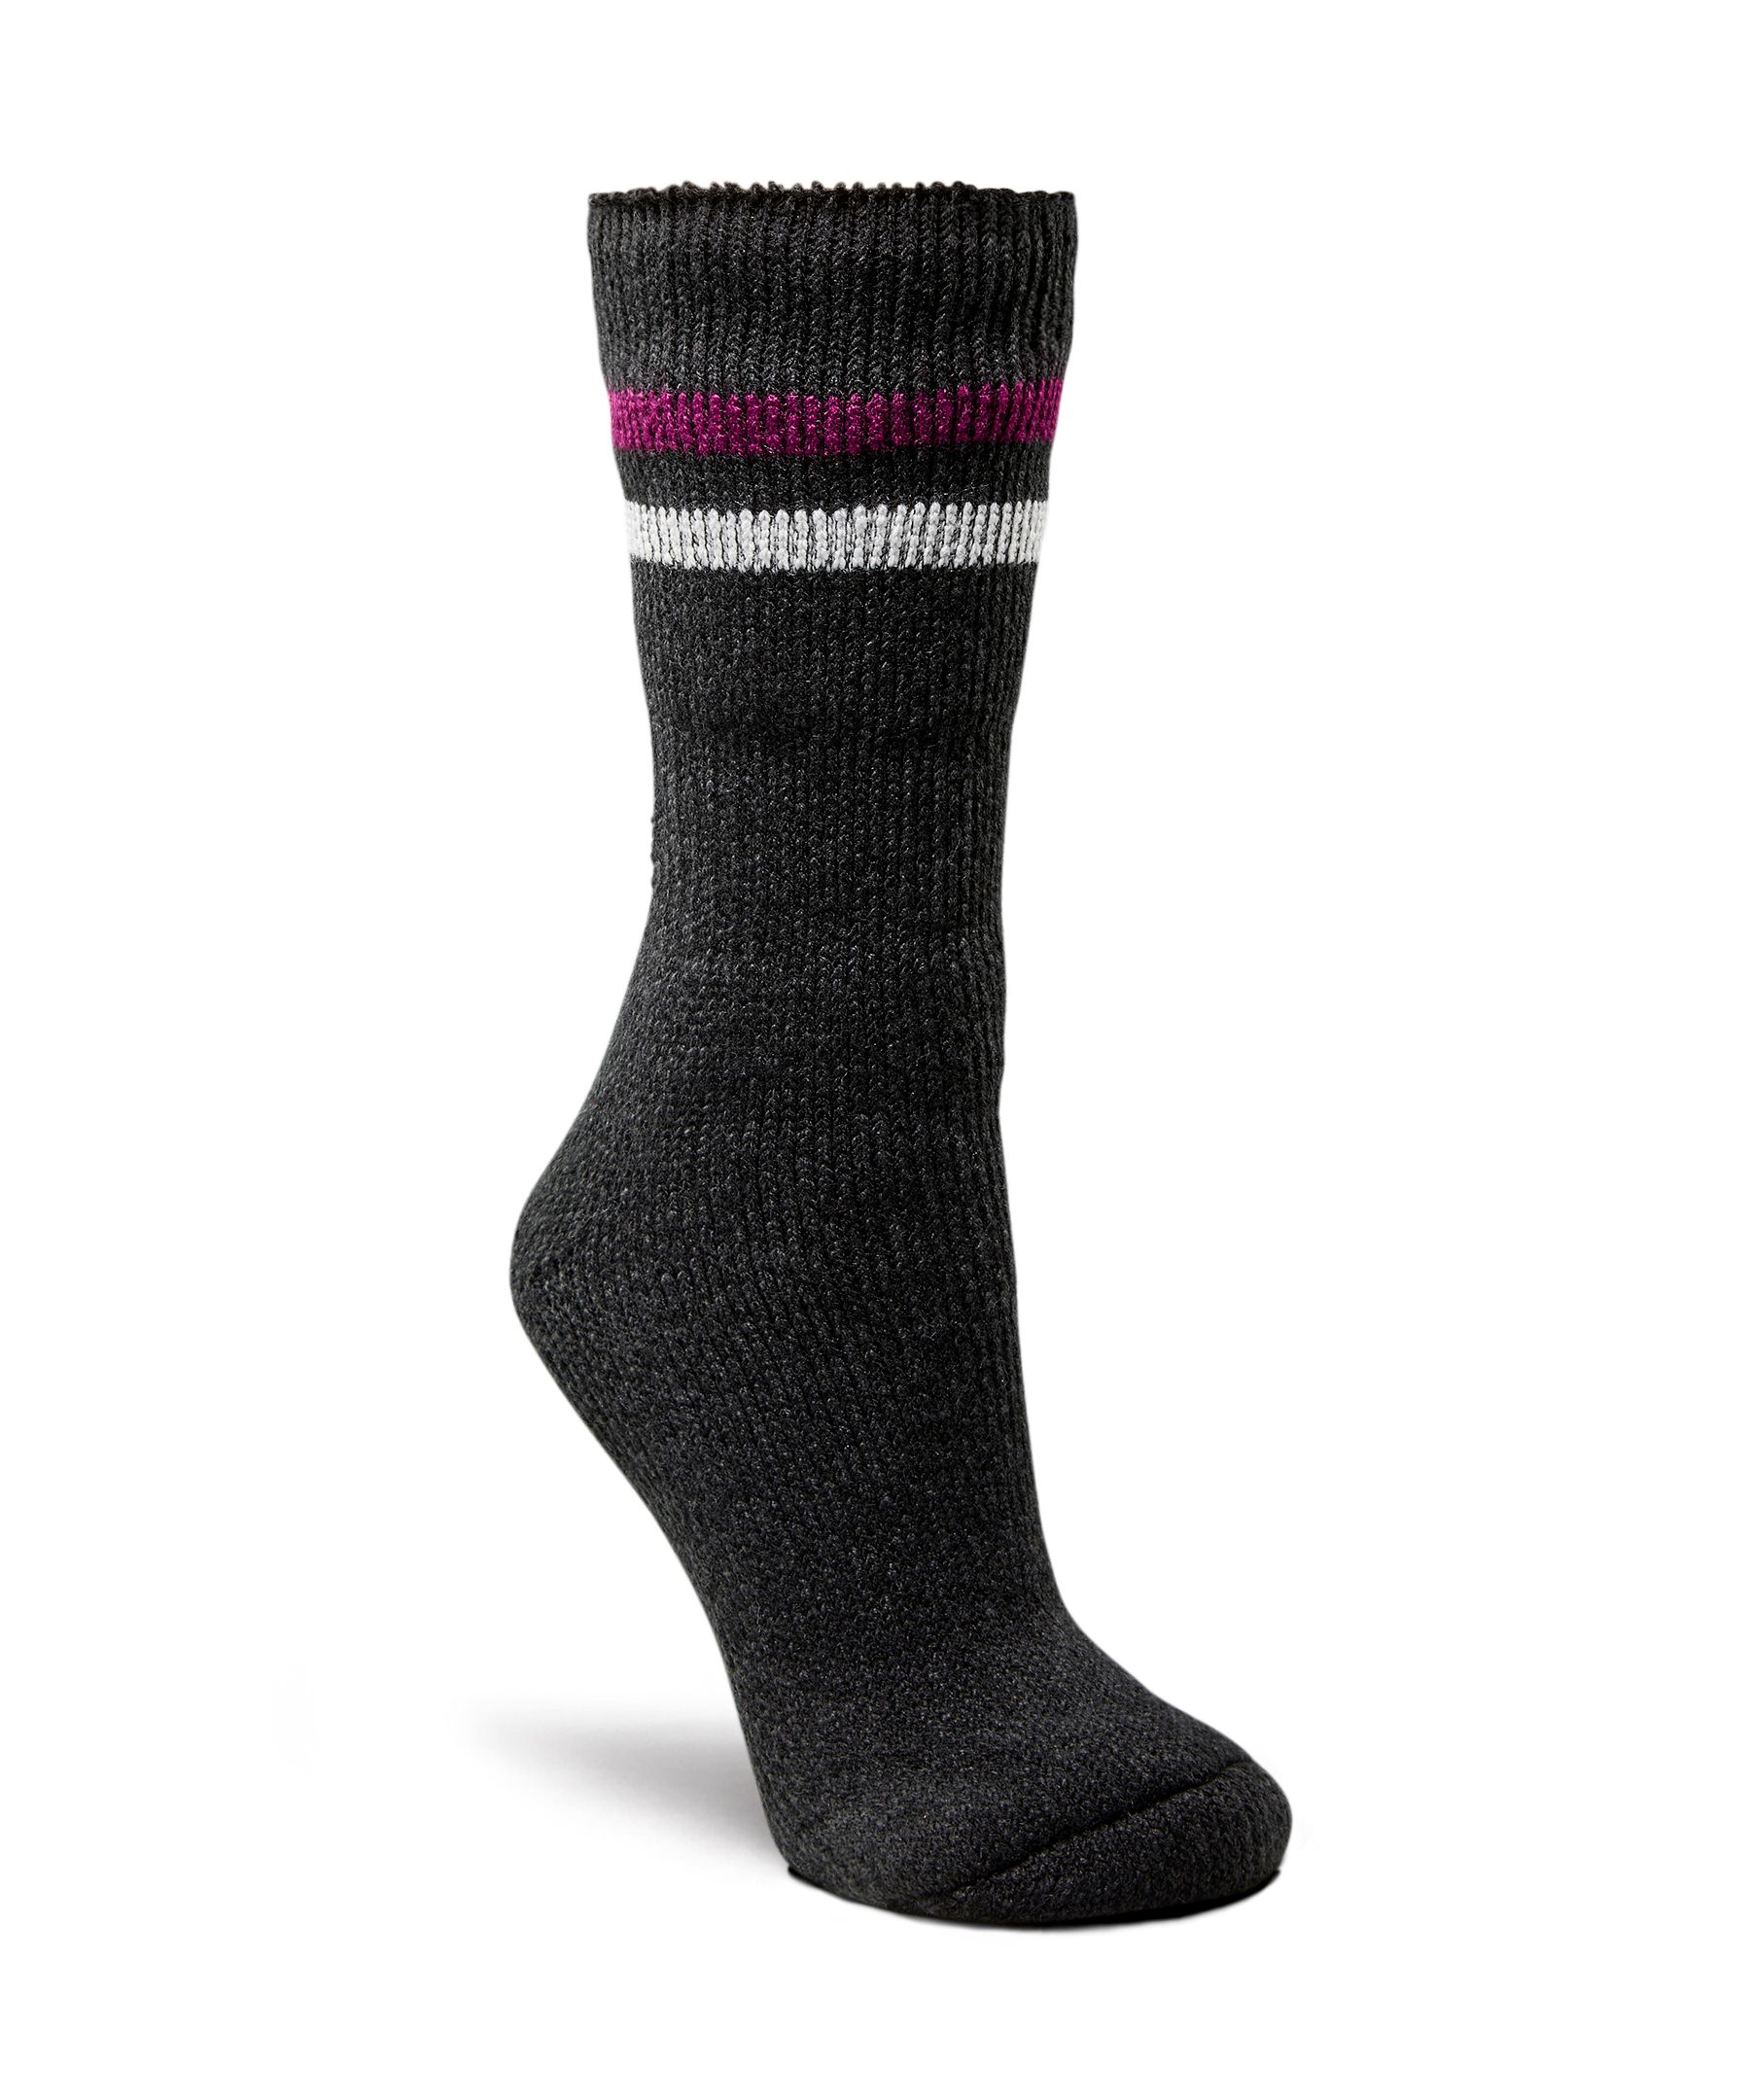 WindRiver Women's T-Max Heat Anti Skid Home Socks